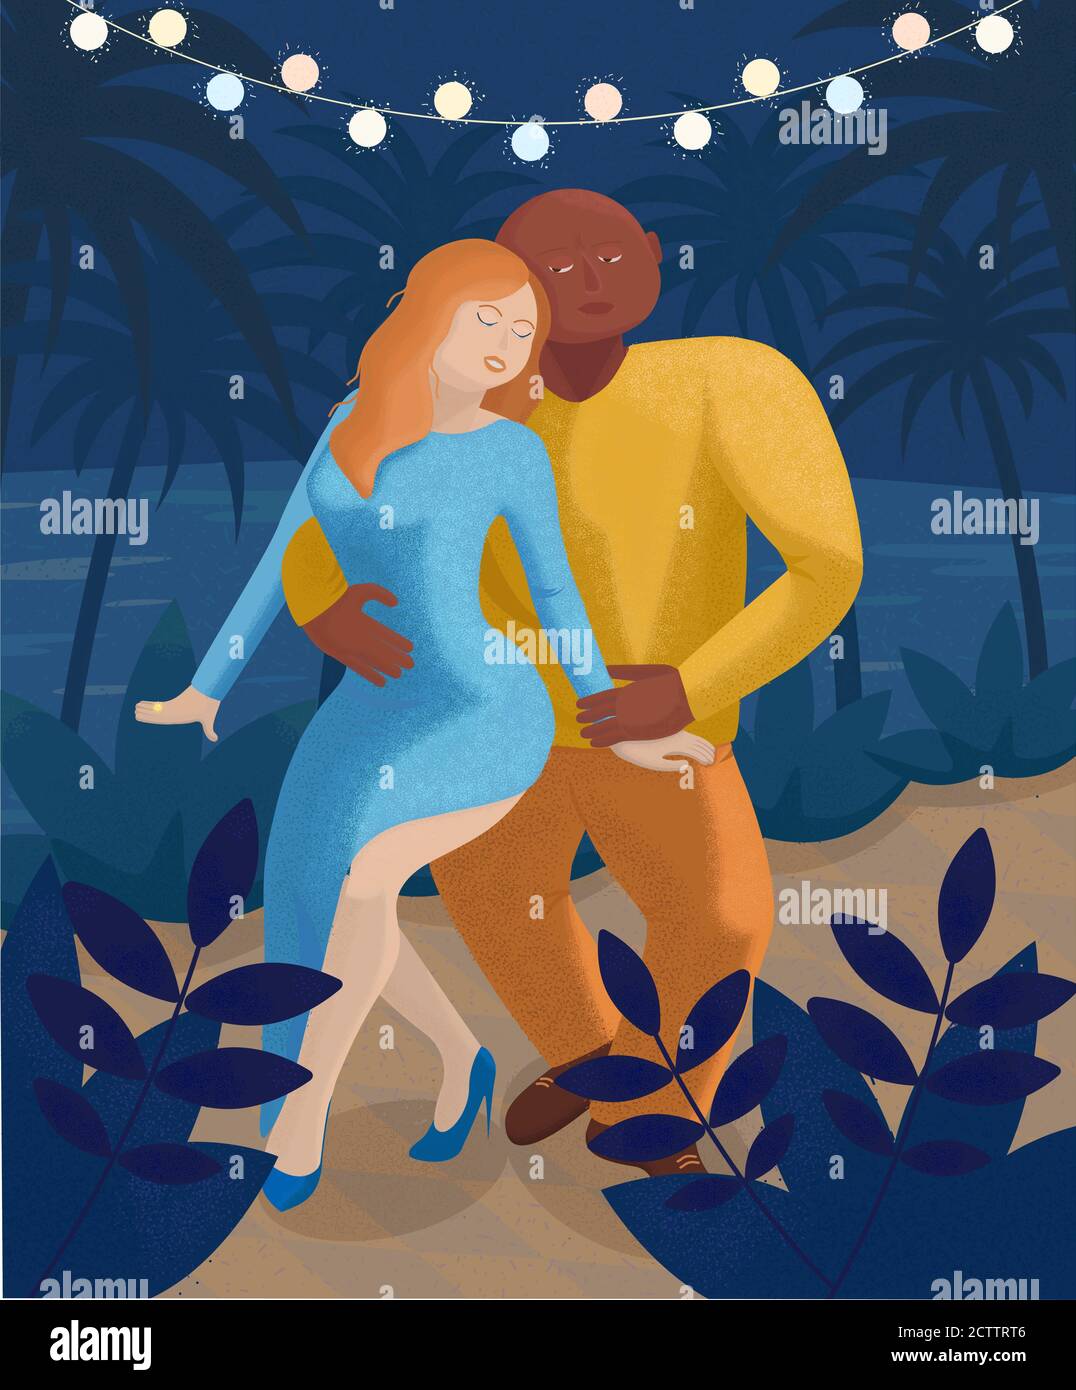 Fête de danse - illustration vectorielle avec couple dansant. Illustration de Vecteur